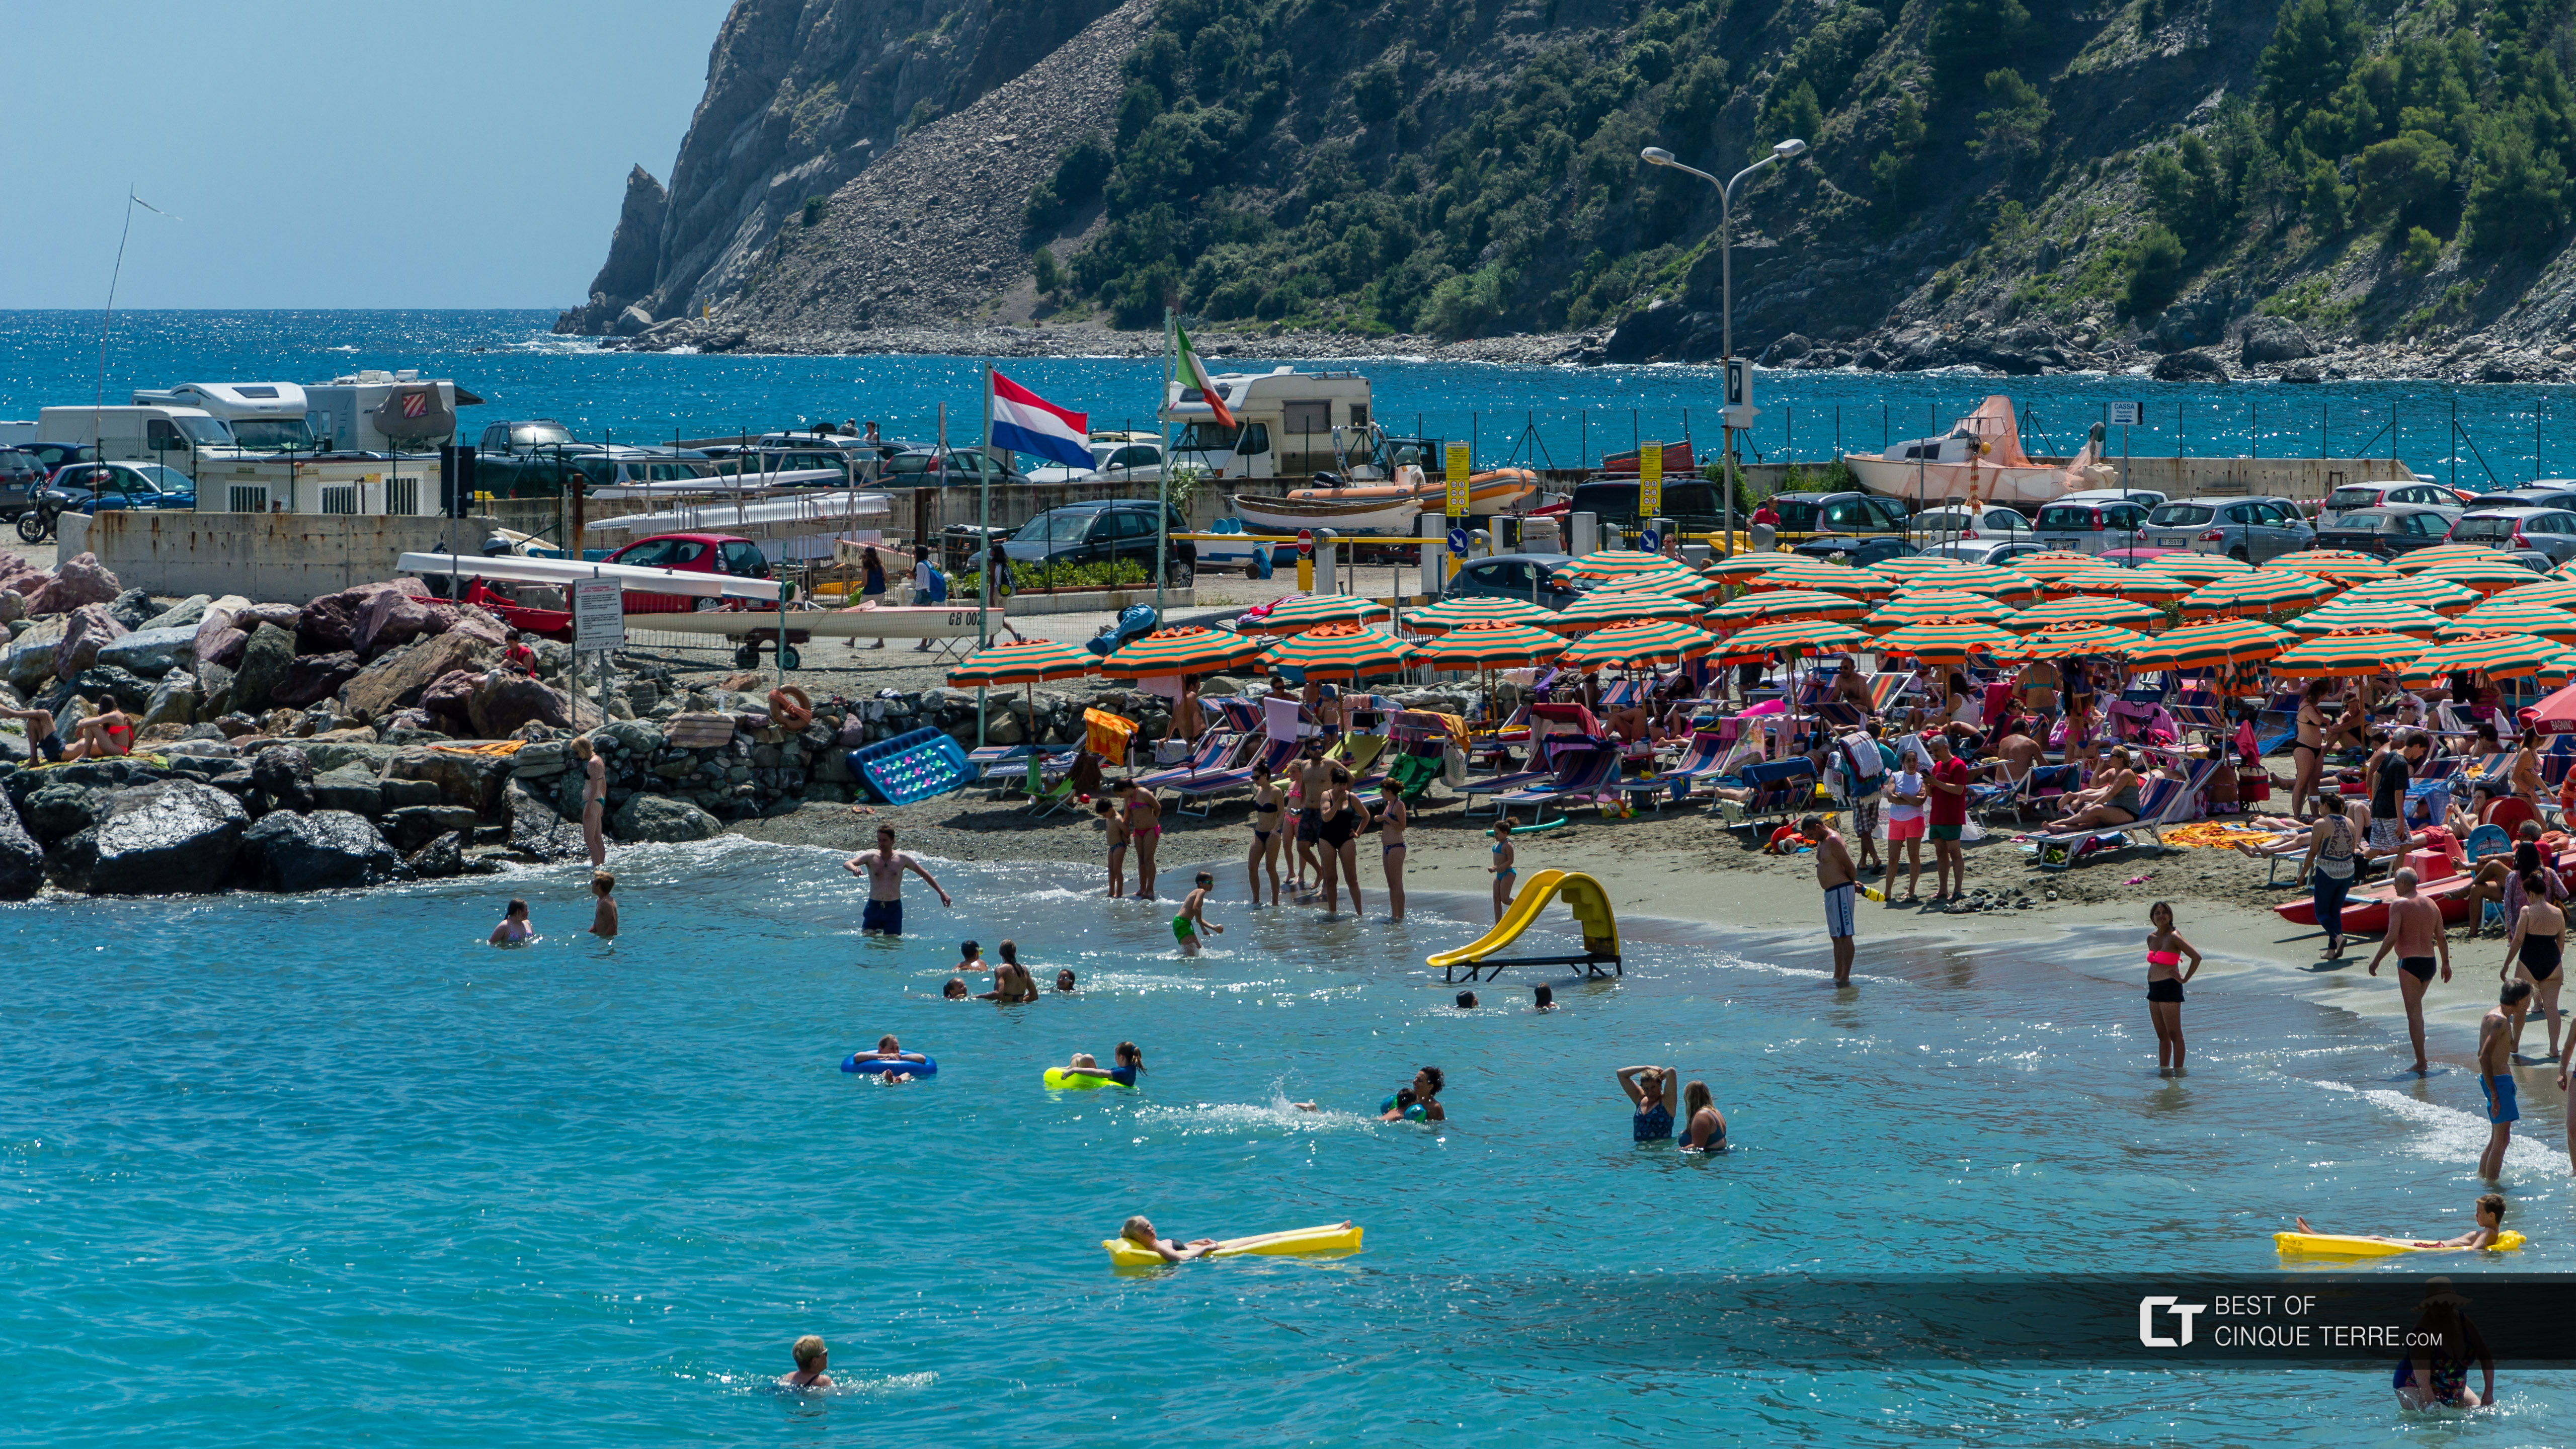 Uma praia popular para famílias com crianças, Cinque Terre, Itália